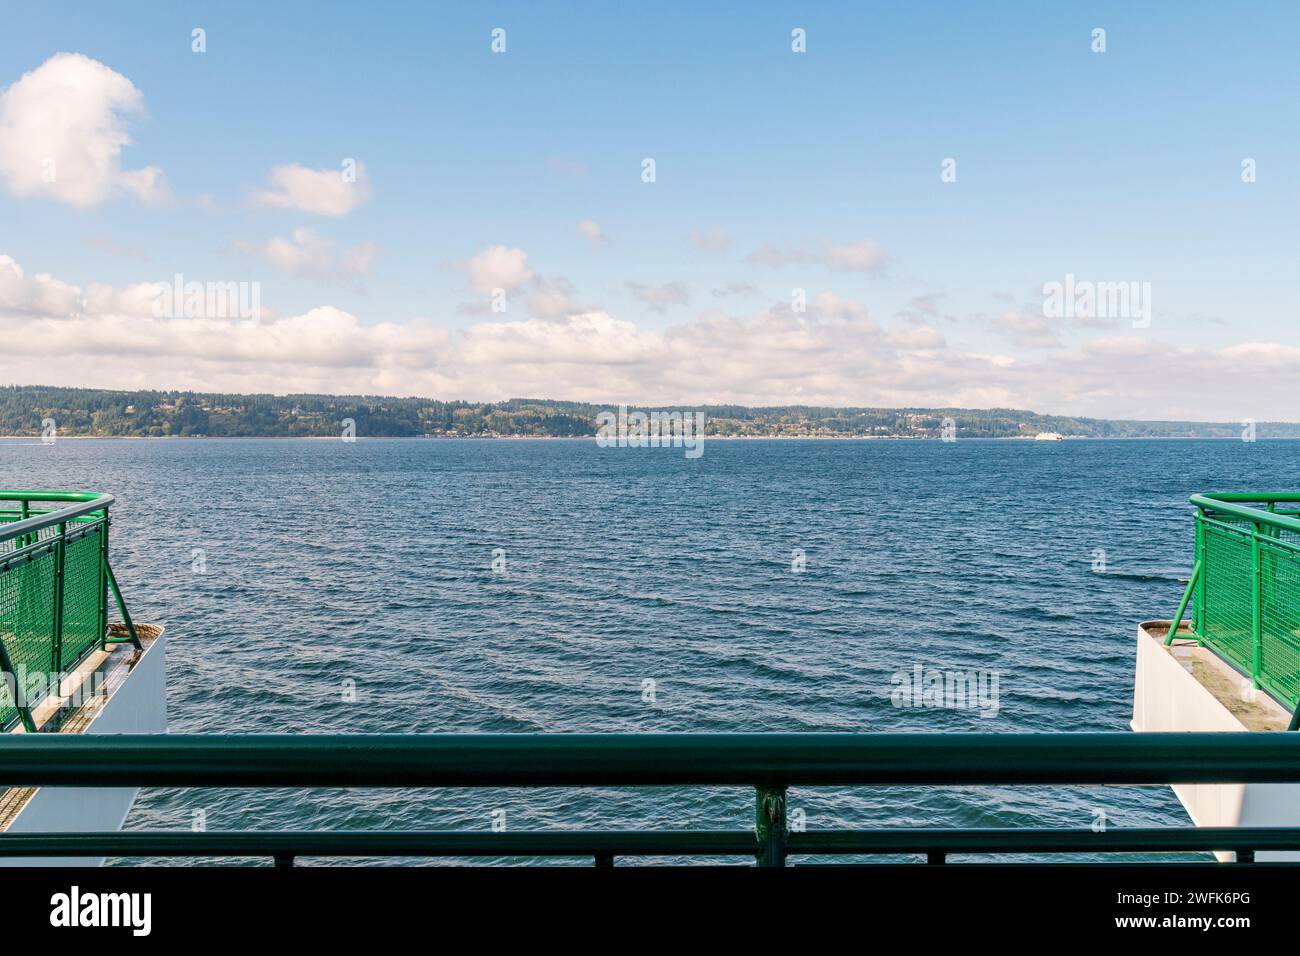 Whidbey Island befindet sich am Horizont dieses horizontalen Fotos, aufgenommen von einem Boot der Washington State Ferry. Stockfoto